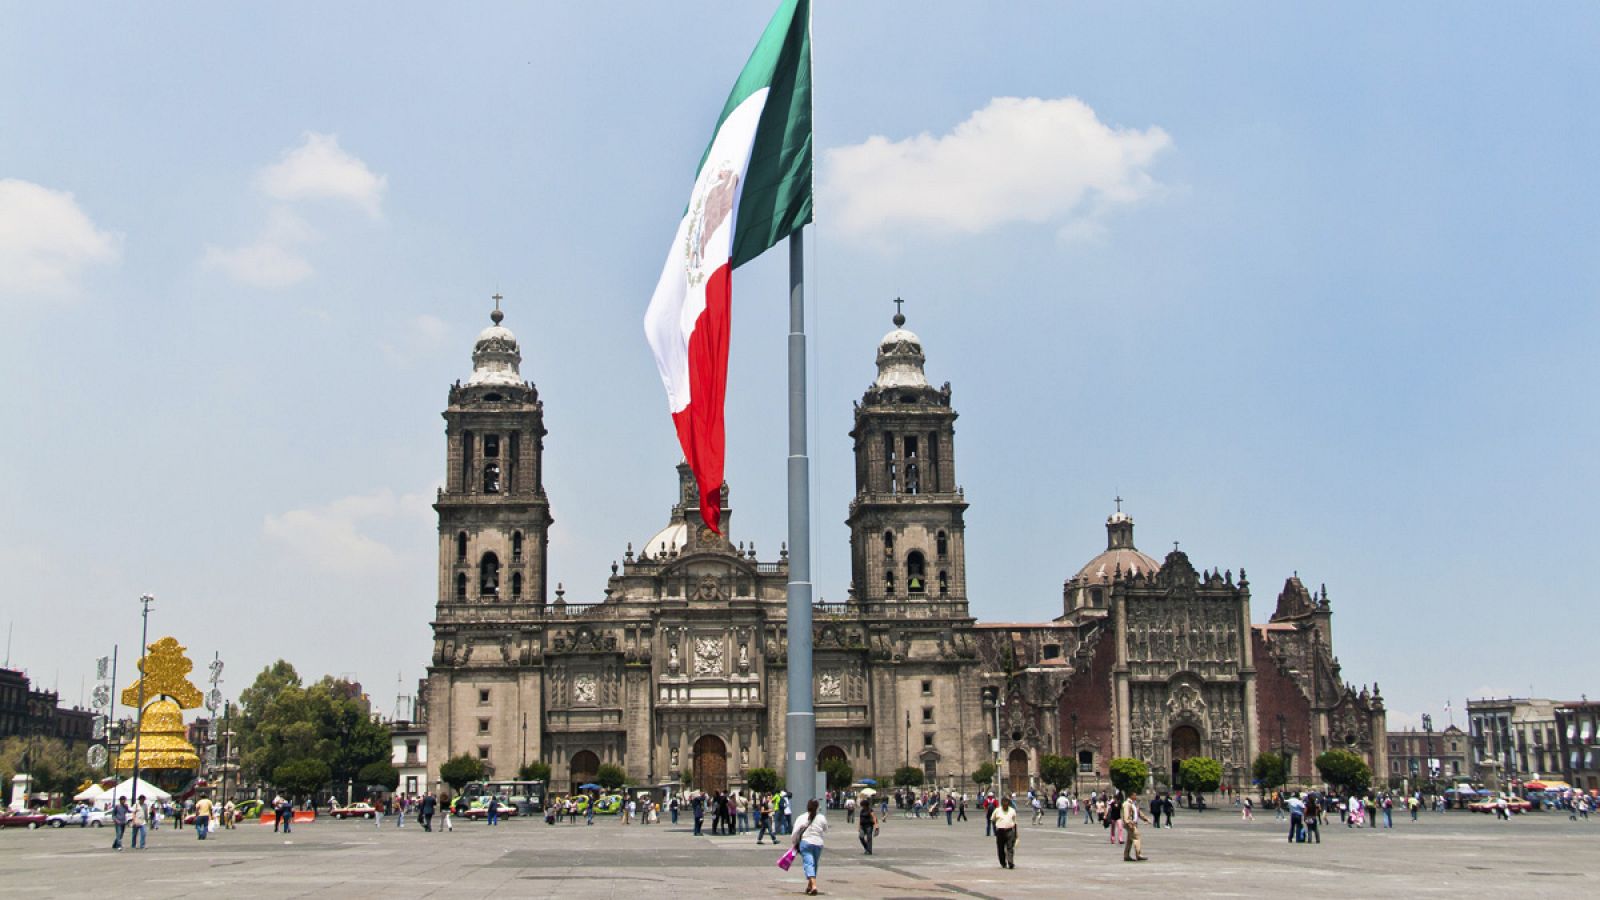 La Plaza de la Constitución de la Ciudad de México, popularmente conocida como El Zócalo